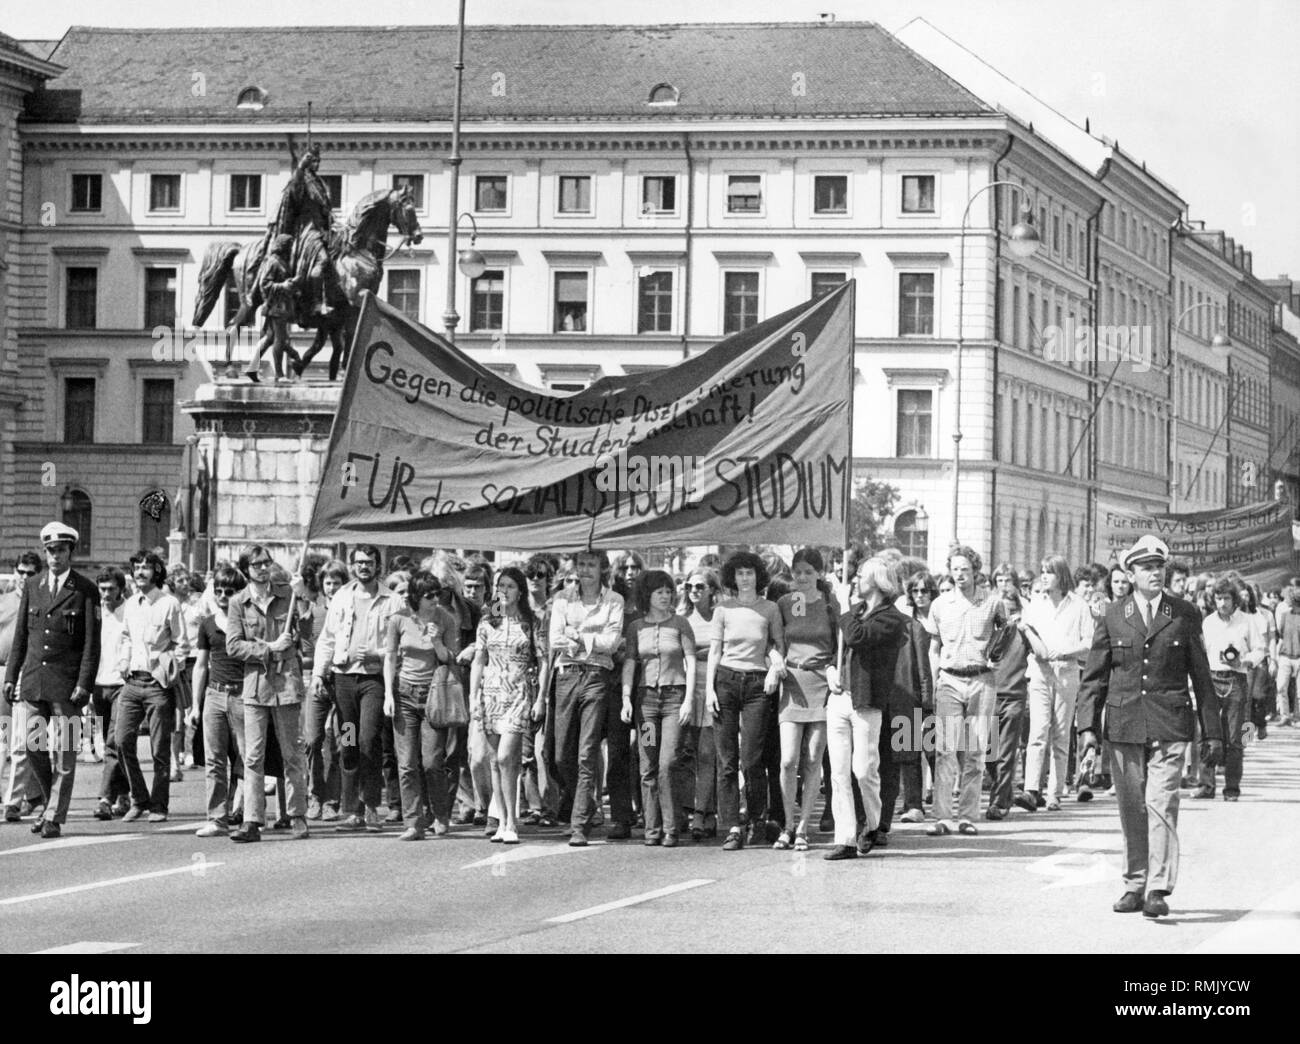 Studenten demonstrieren in München, einem Banner lautet: "Gegen die politische Disziplinierung-Stiftung! Für das sozialistische Studium' ('Gegen die politische Disziplinierung der Studenten! Zugunsten der sozialistischen Studien"). Im Hintergrund die Statue von Ludwig dem Bayern. Stockfoto